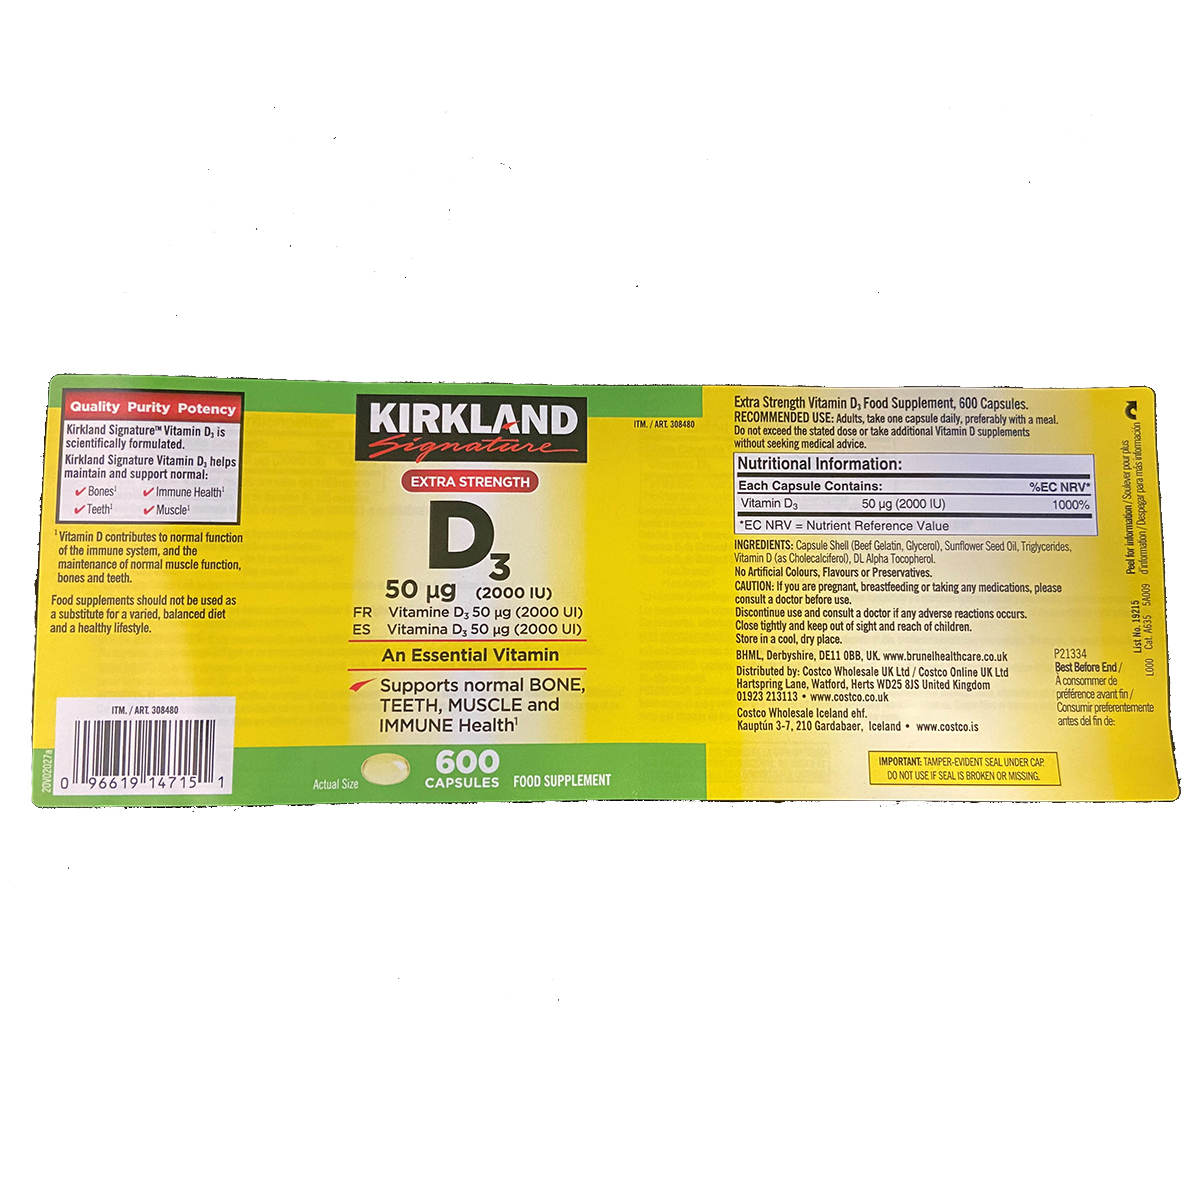 Kirkland Signature Vitamin D3 2000IU, 600 Count